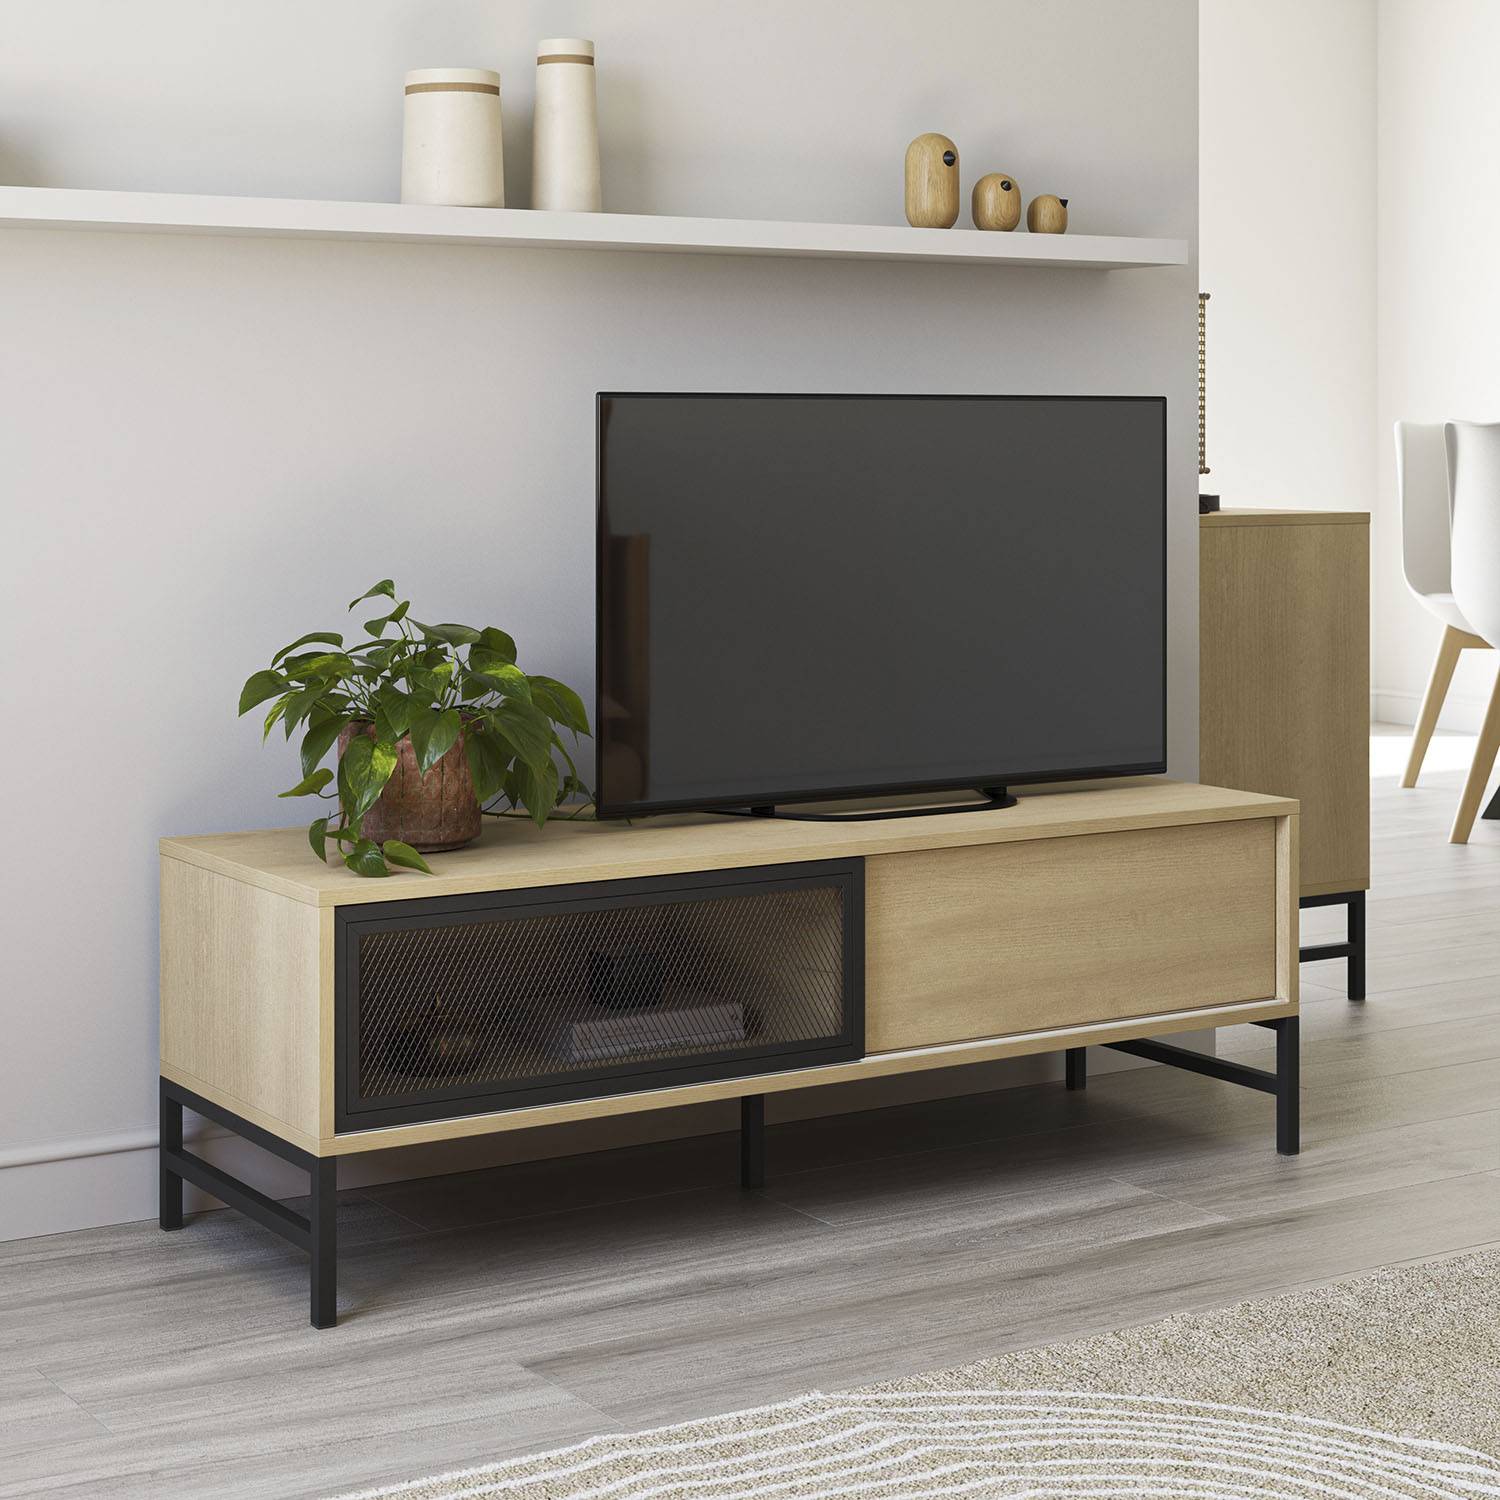 Mueble para TV color natural con 3 cajones rejilla